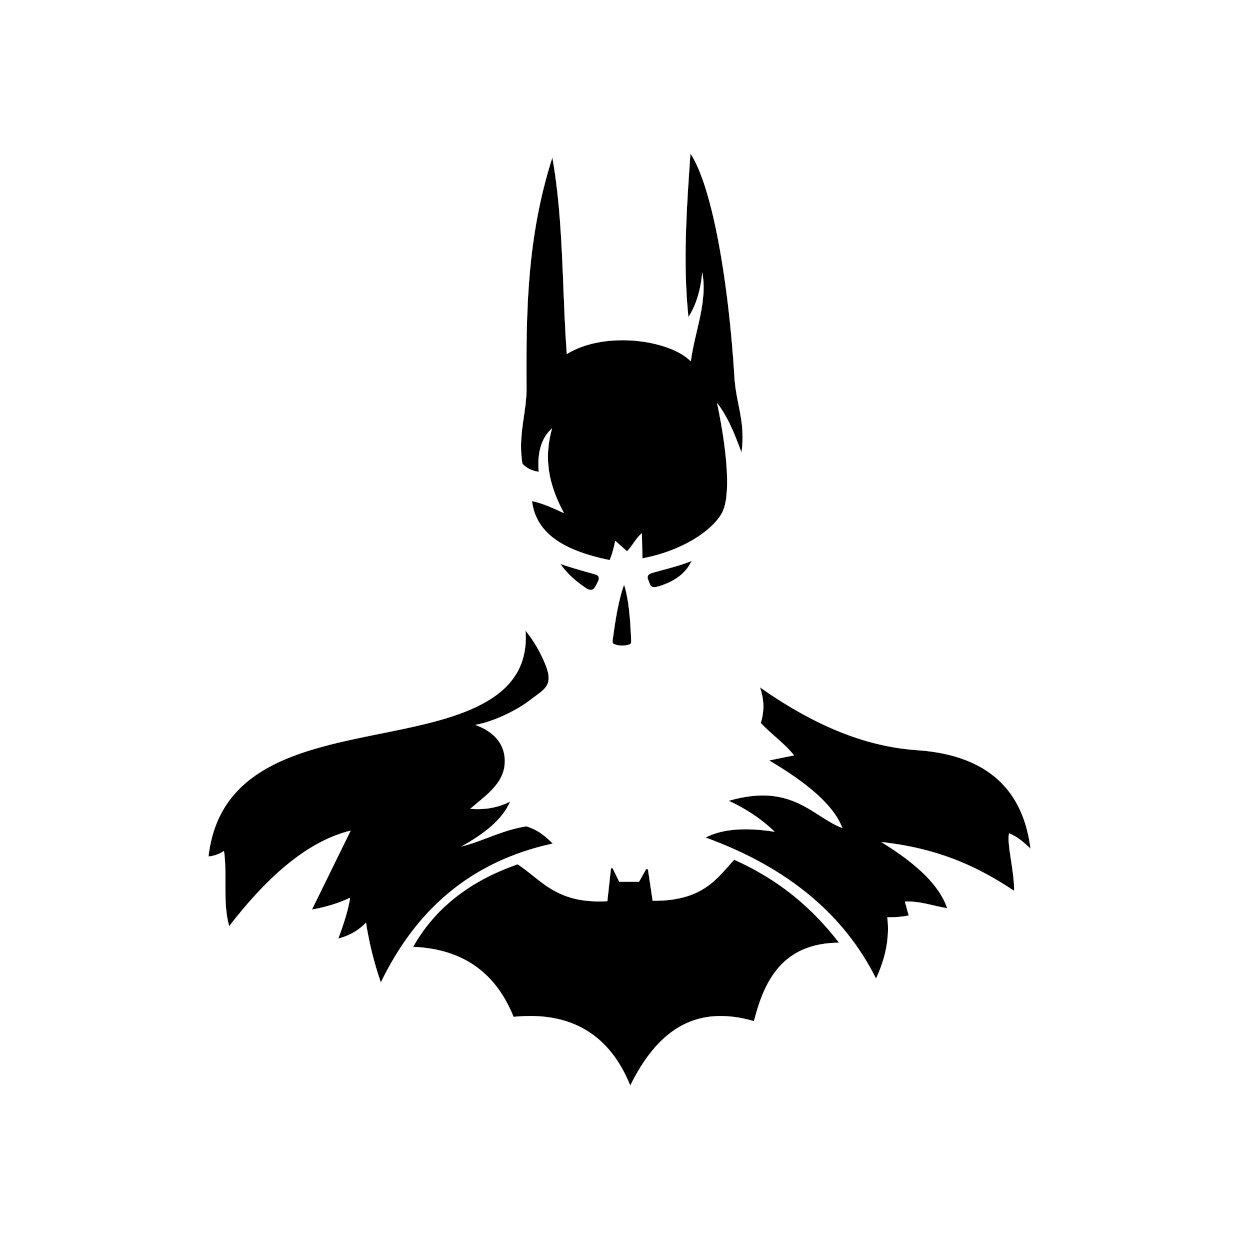 Download 500+ Batman Logo, Wallpapers, HD Images, Vectors Free Download